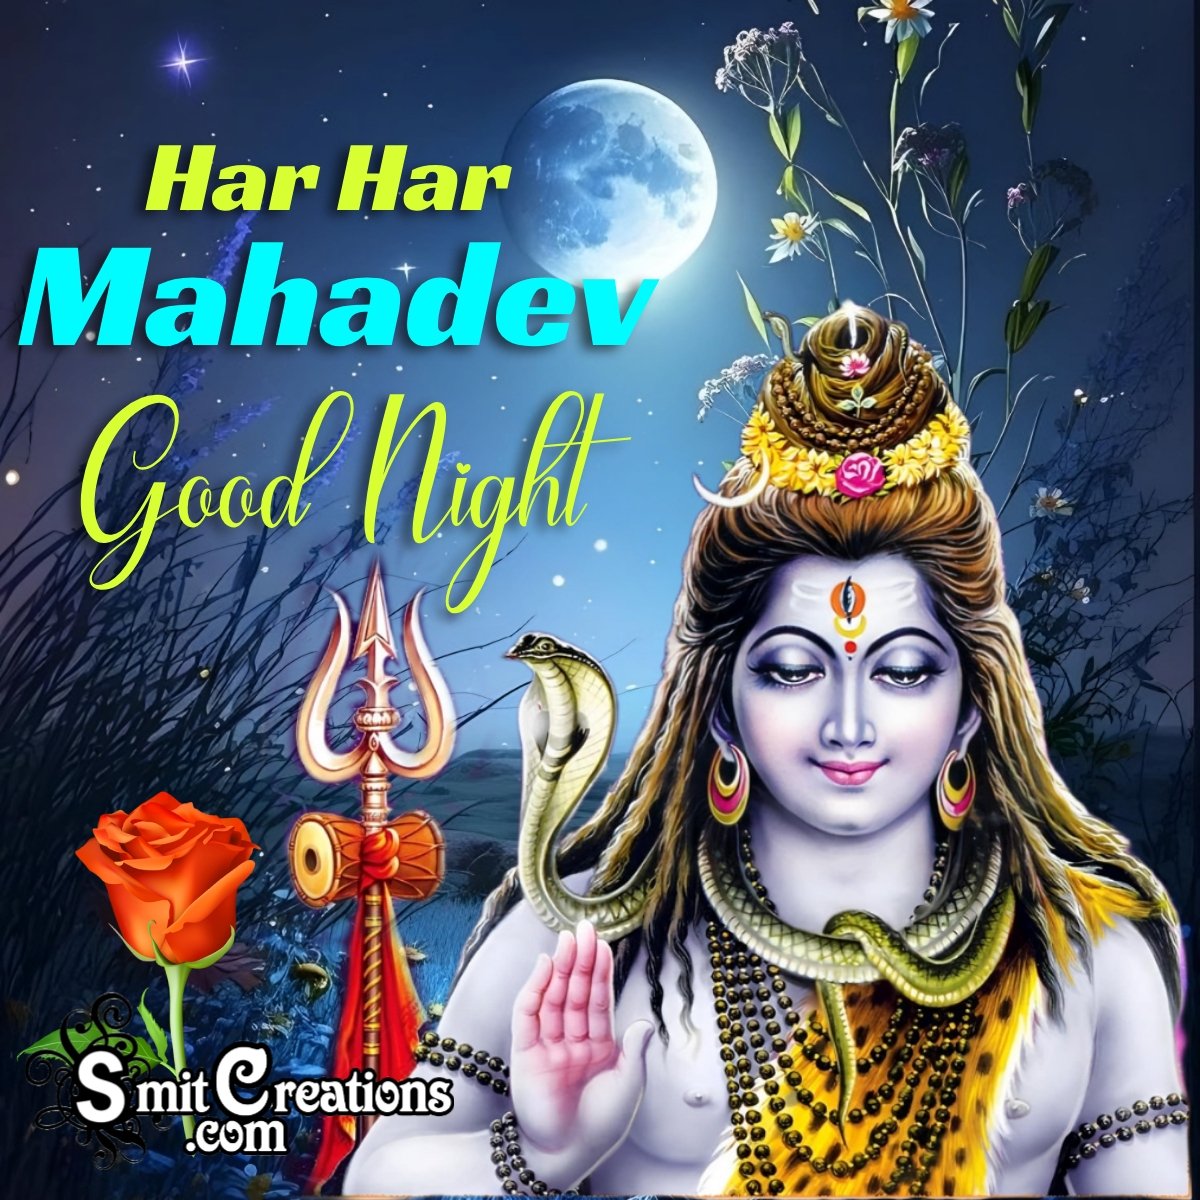 Good Night Har Har Mahadev